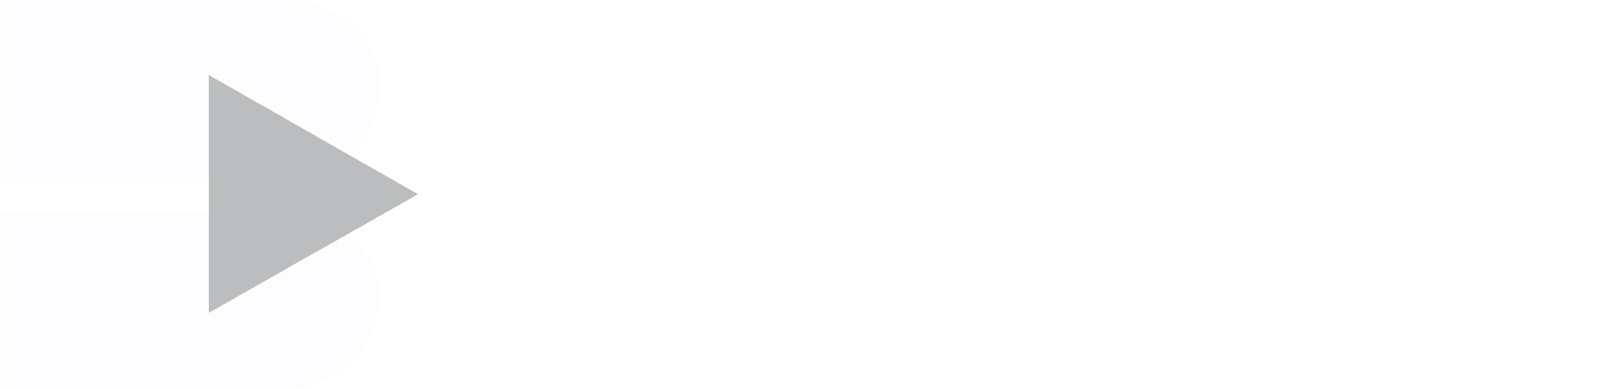 The Bidvest Group logo grand pour les fonds sombres (PNG transparent)